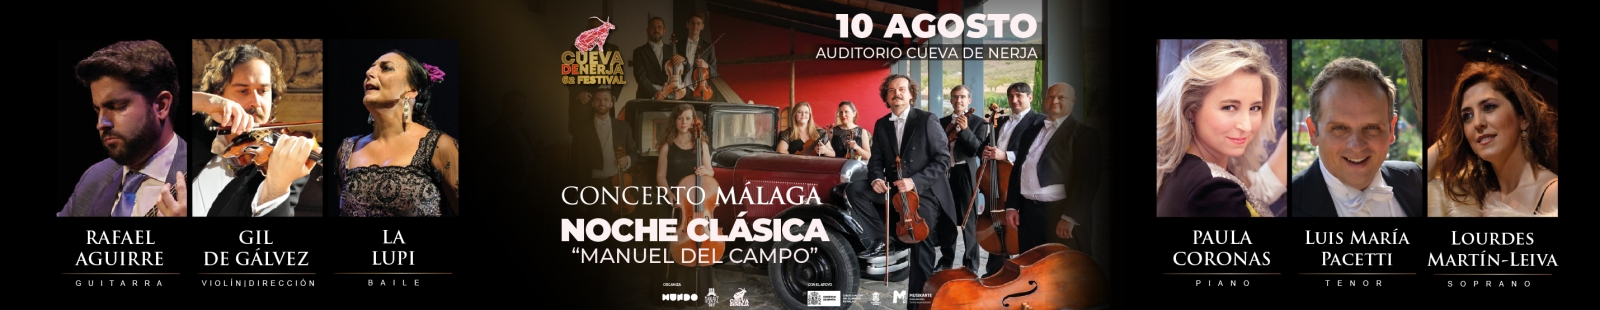 Concerto Málaga, Noche Clásica "Manuel del Campo"